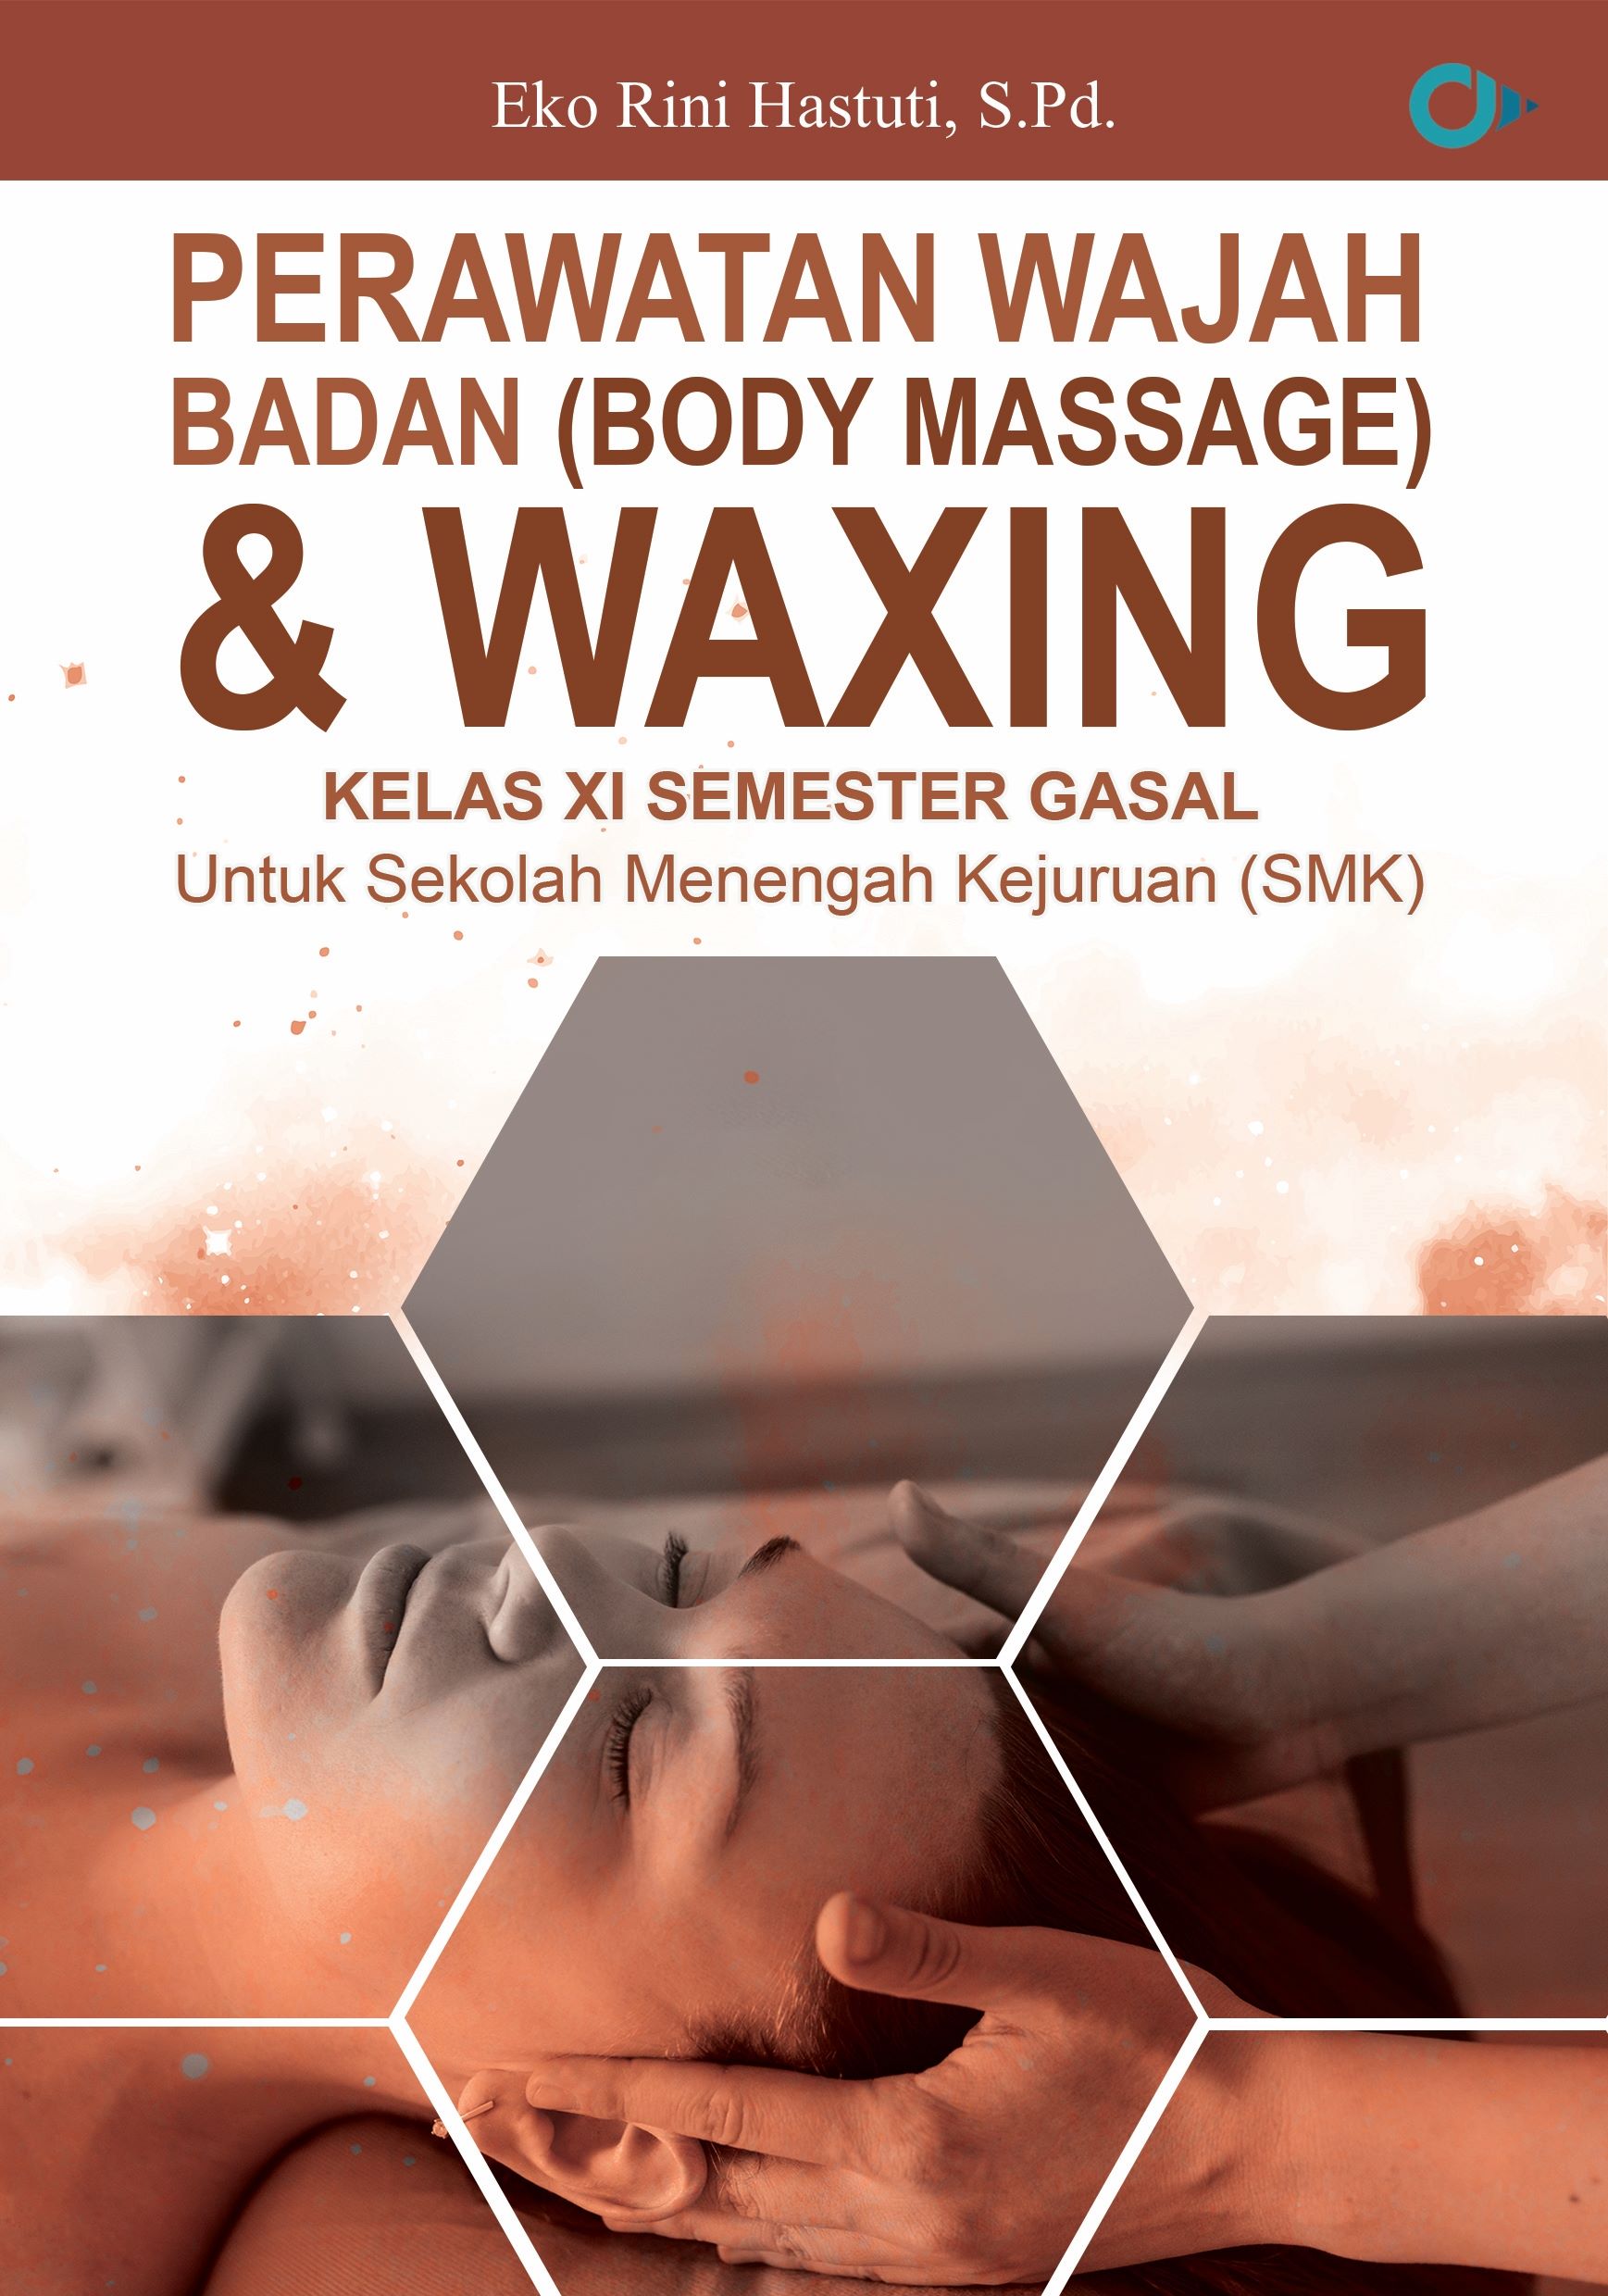 Perawatan Wajah, Badan (body massage) & Waxing Kelas XI Semester Gasal